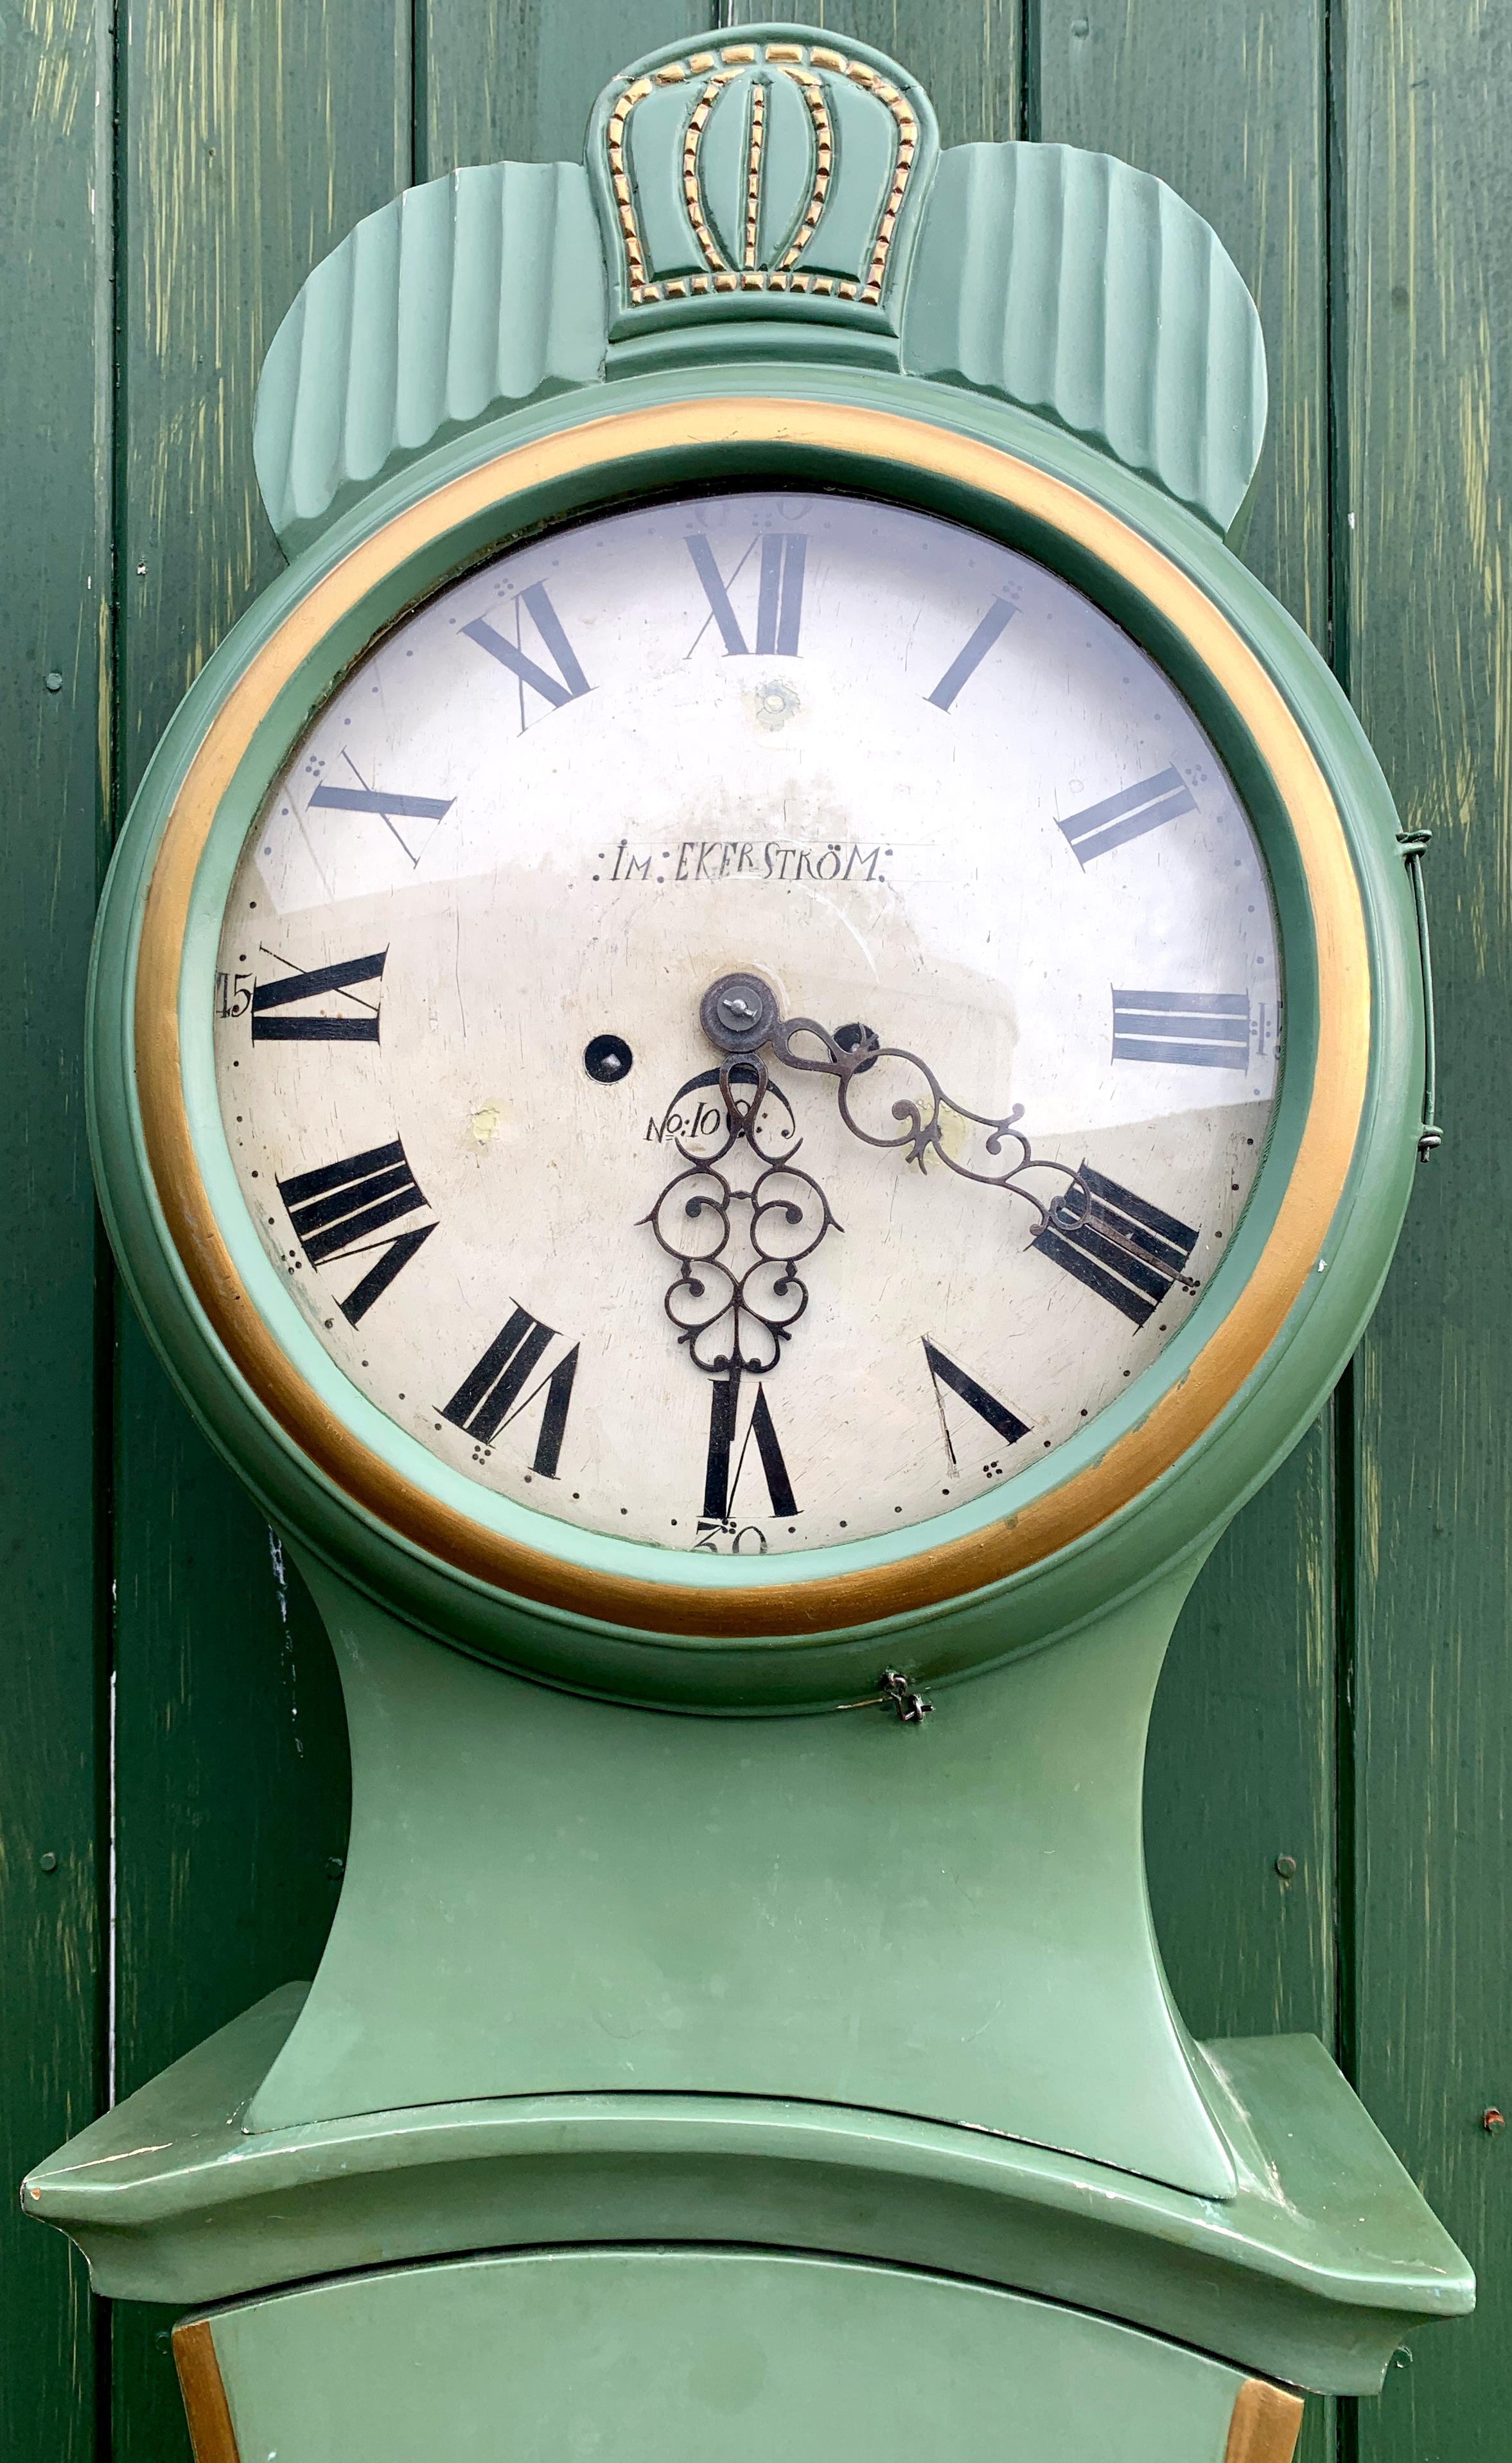 Horloge mora suédoise ancienne du début des années 1800 avec une belle finition verte et or et des détails classiques de Fryksdall avec un corps en forme de ventre allongé, un double motif d'étoile et un visage propre en bon état avec le nom du